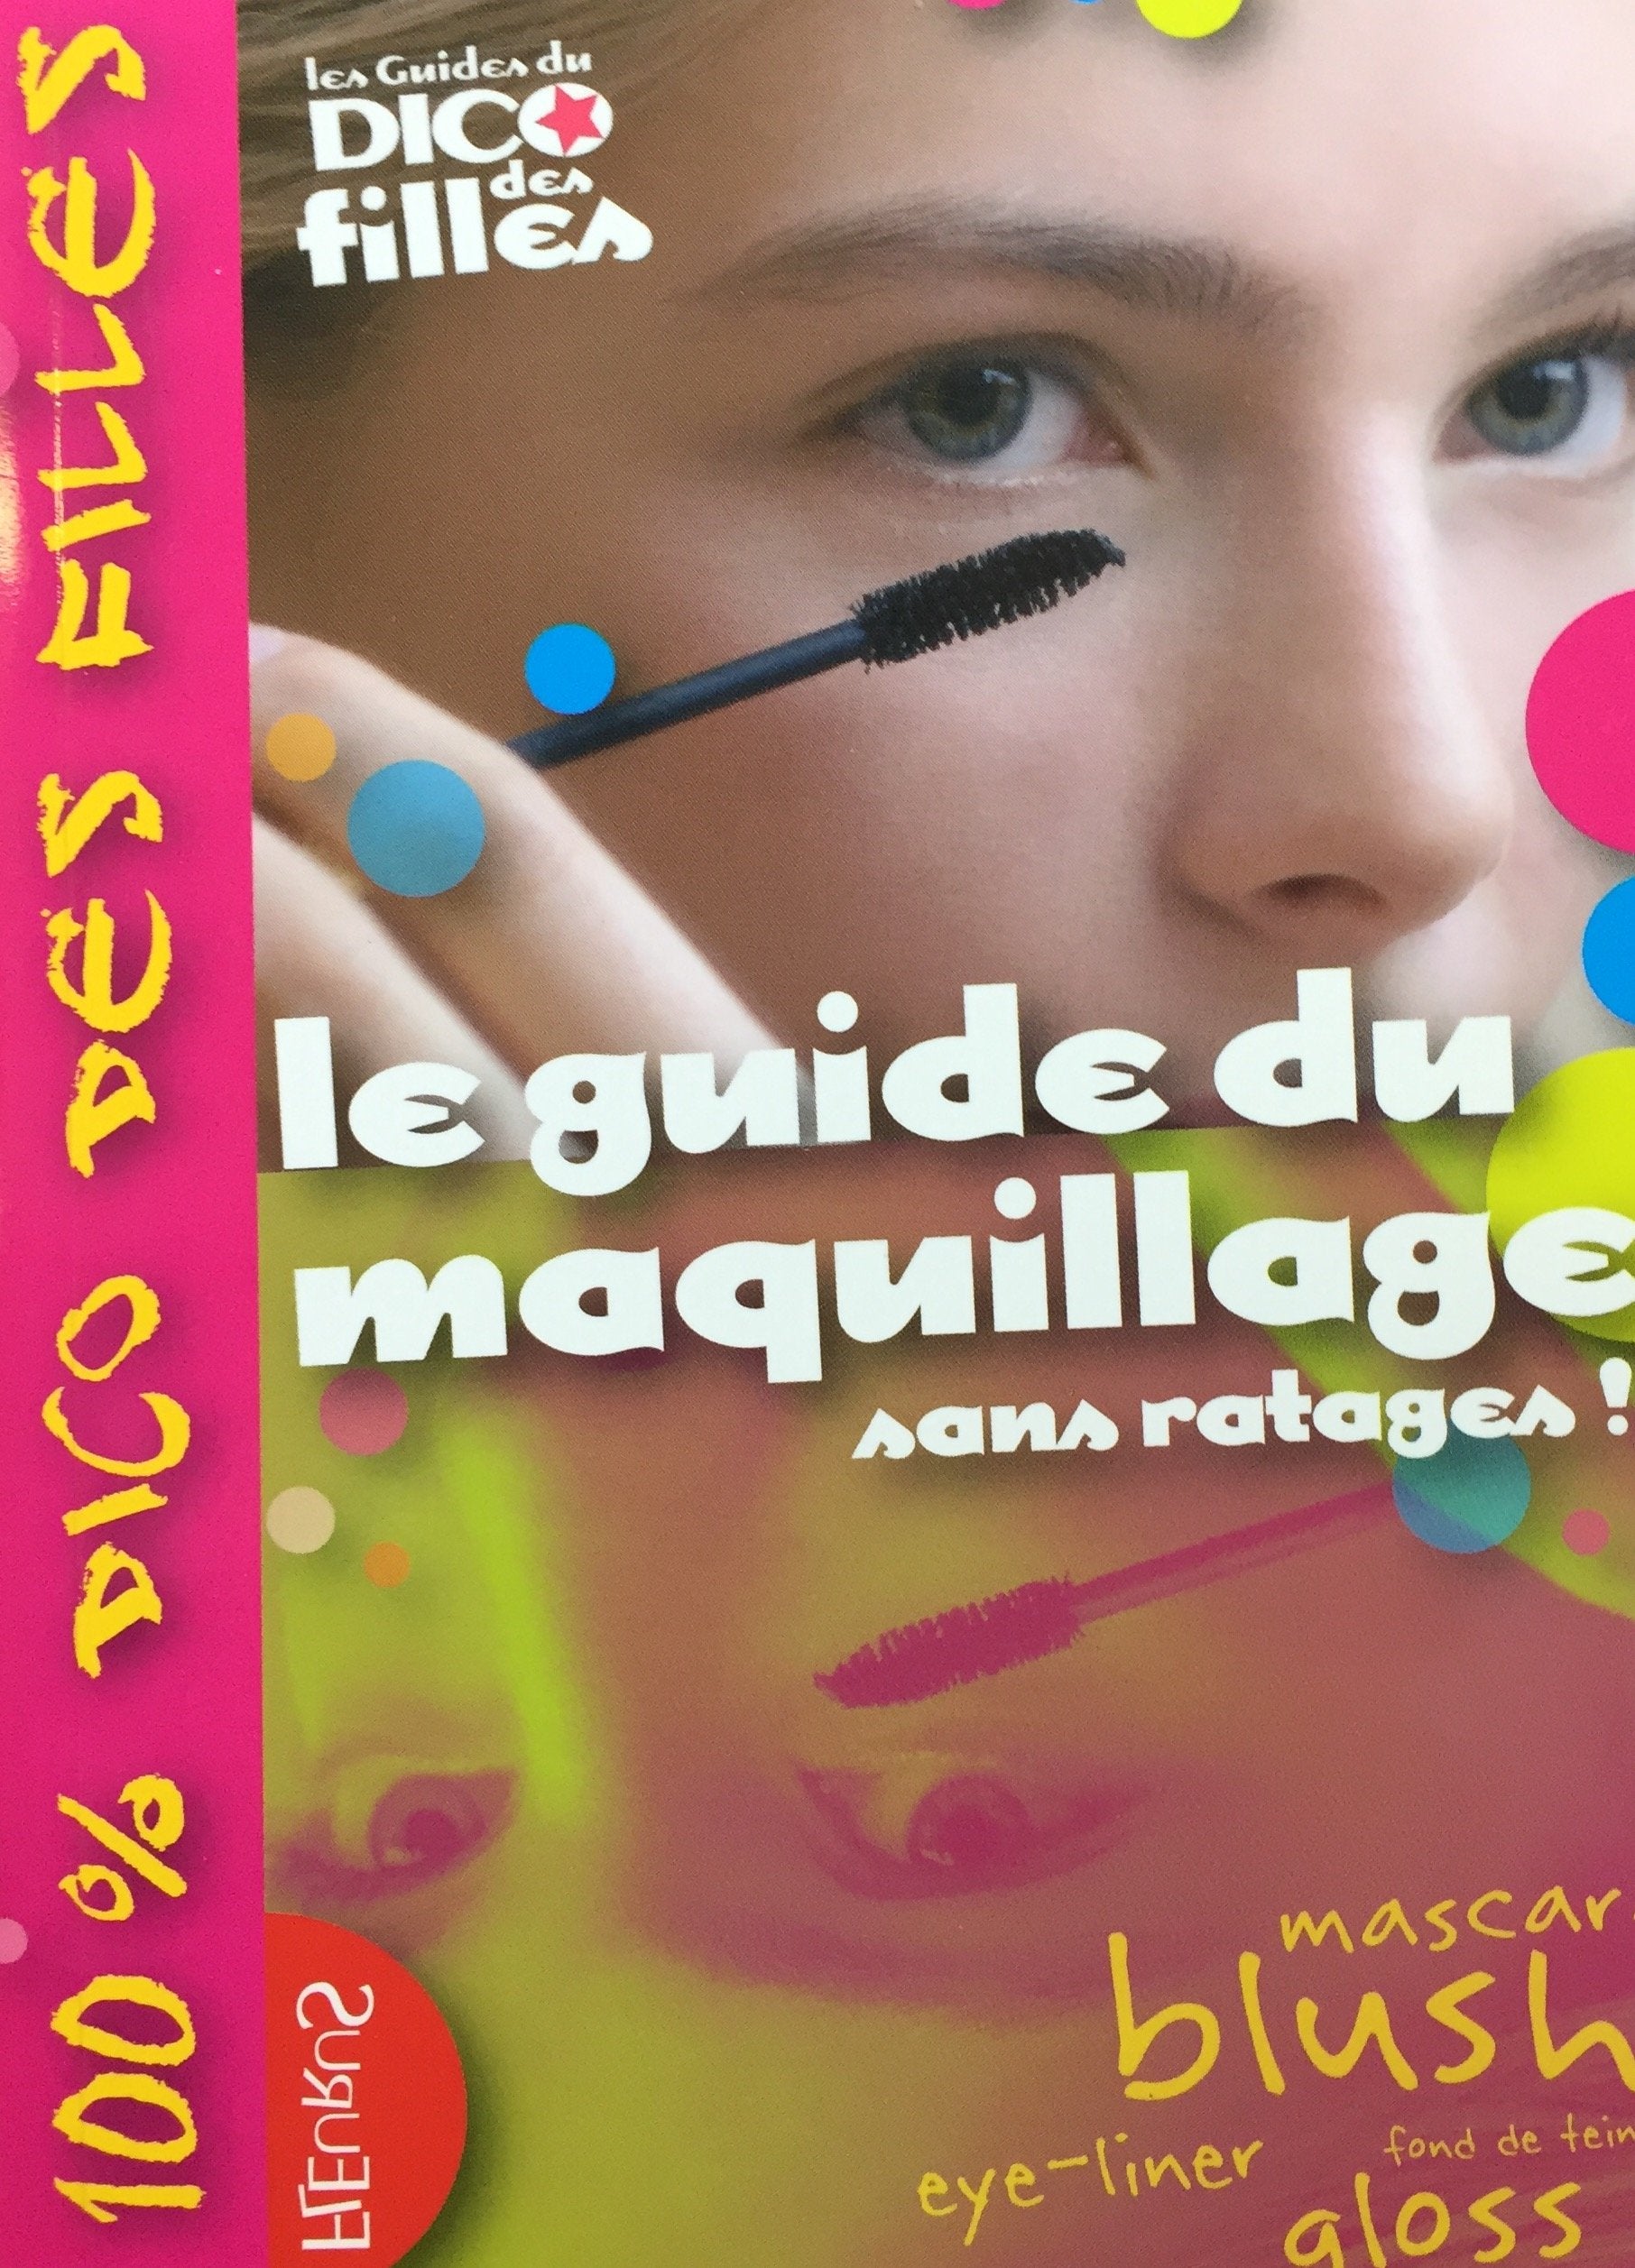 Le Dico des Filles : Le guide du maquillage, sans ratages! (Sandrine  Cathala Delmont)